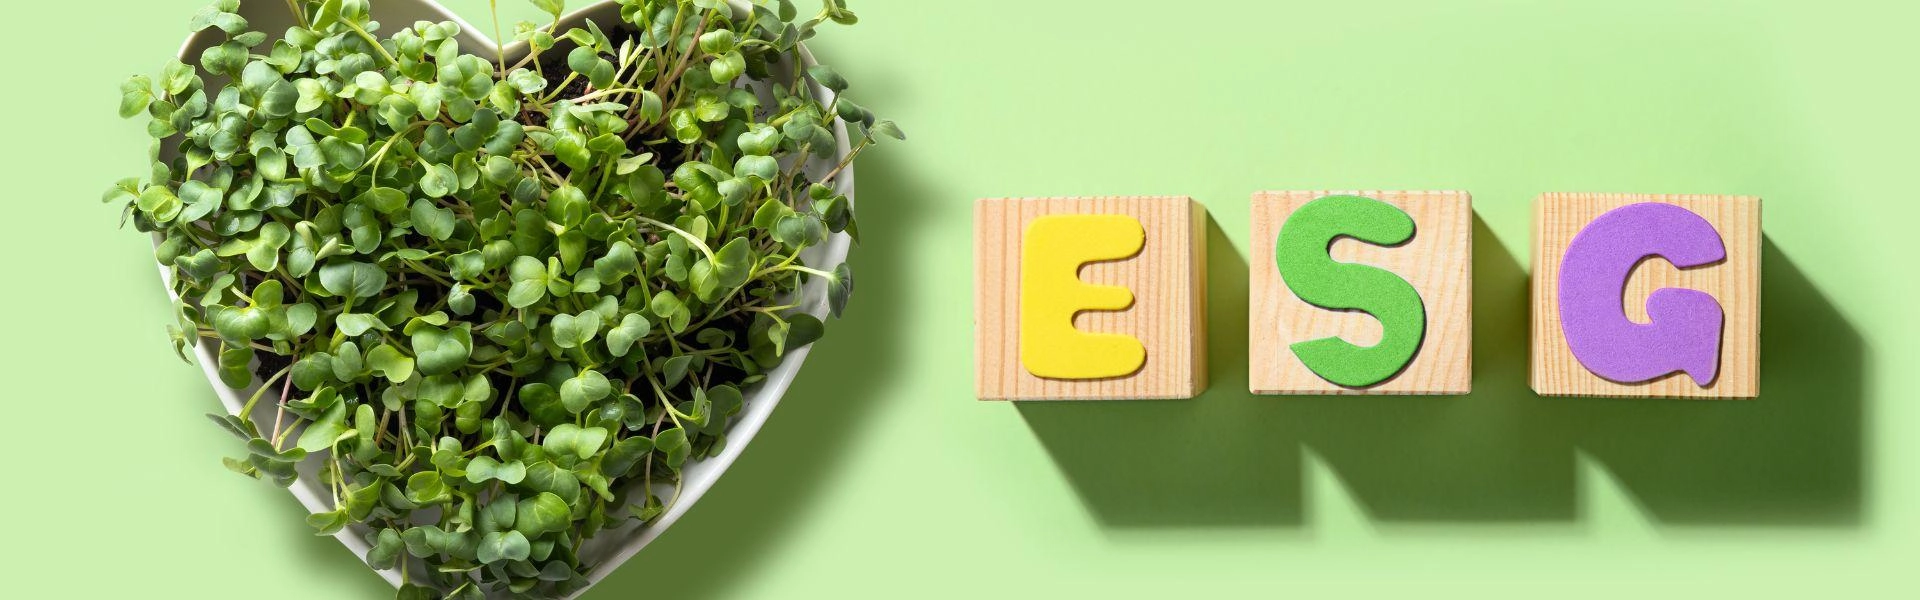 Planta em formato de coração ao lado de blocos de madeira formando as siglas ESG.